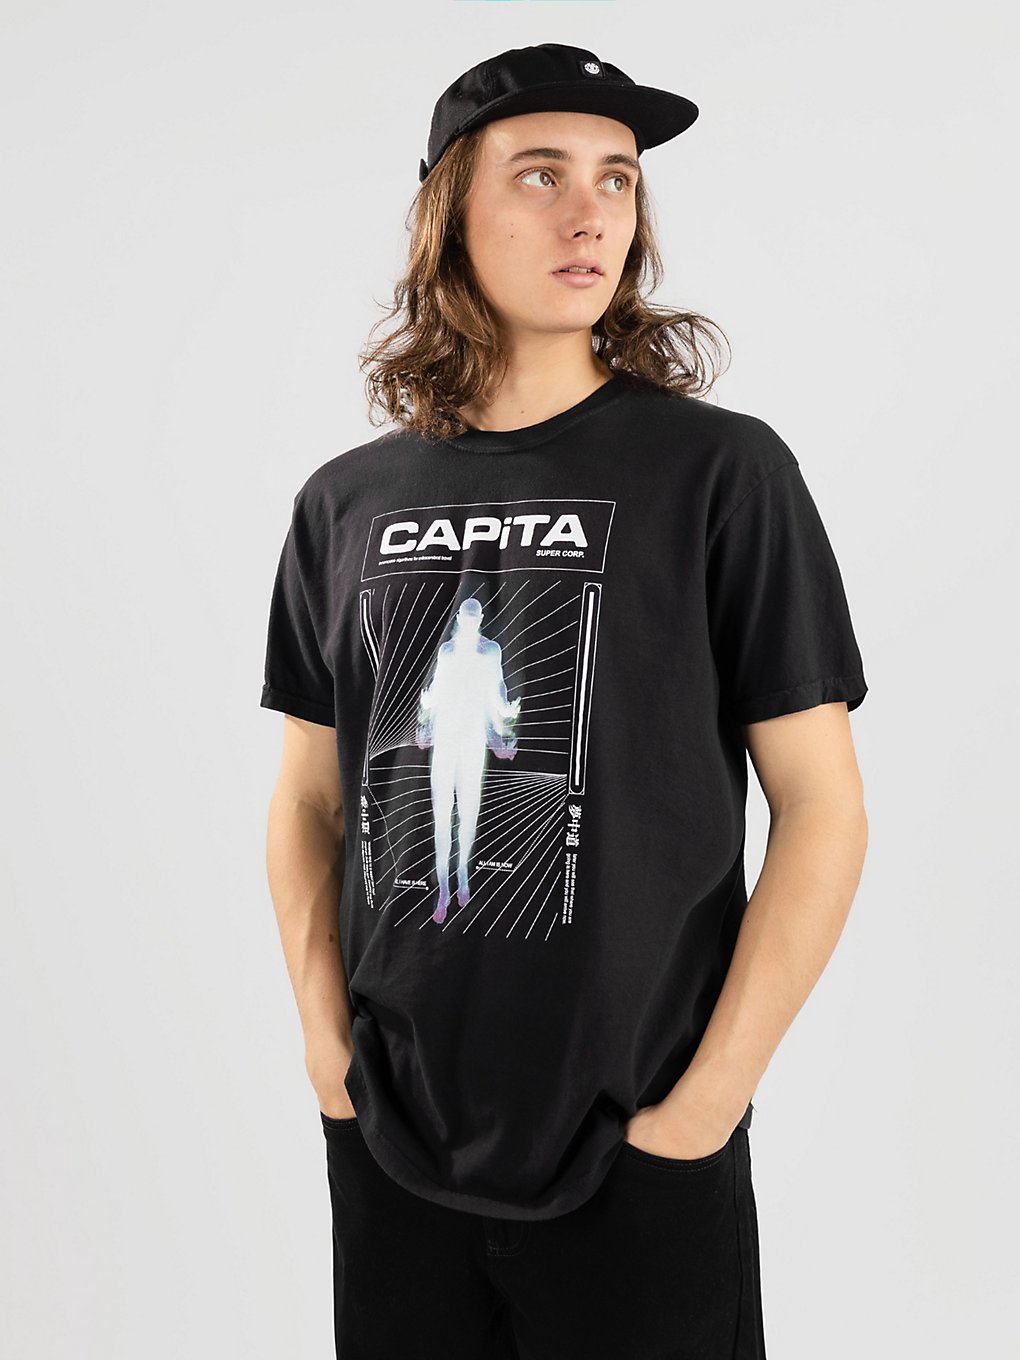 CAPiTA Pathfinder T-Shirt black kaufen